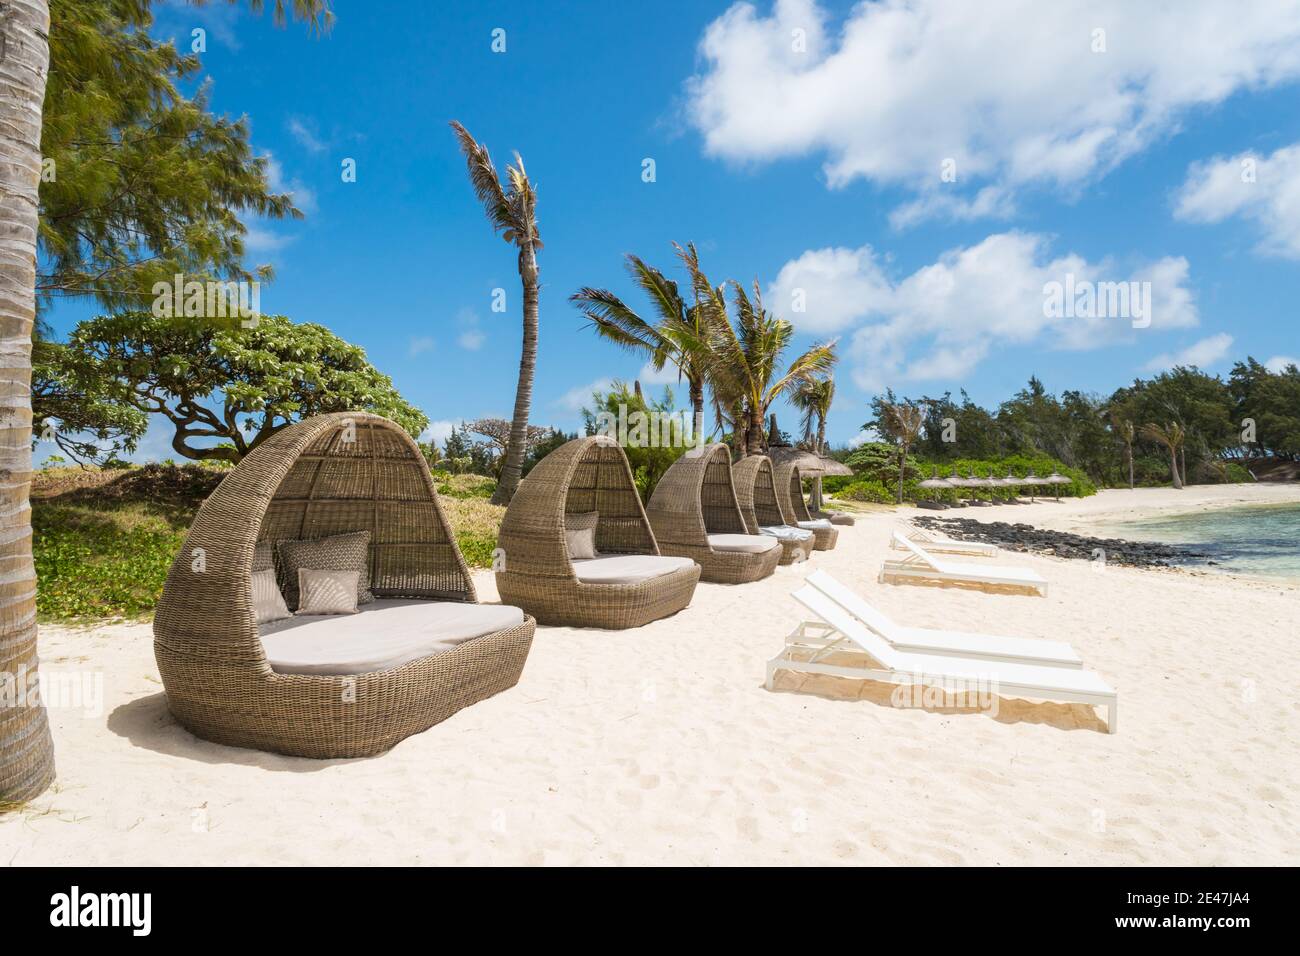 Sonnenliegen, Schoten, Stühle, aus gewebtem Rohr oder Material in einer Reihe an einem weißen Sandstrand auf der tropischen Insel Mauritius ohne Menschen Stockfoto